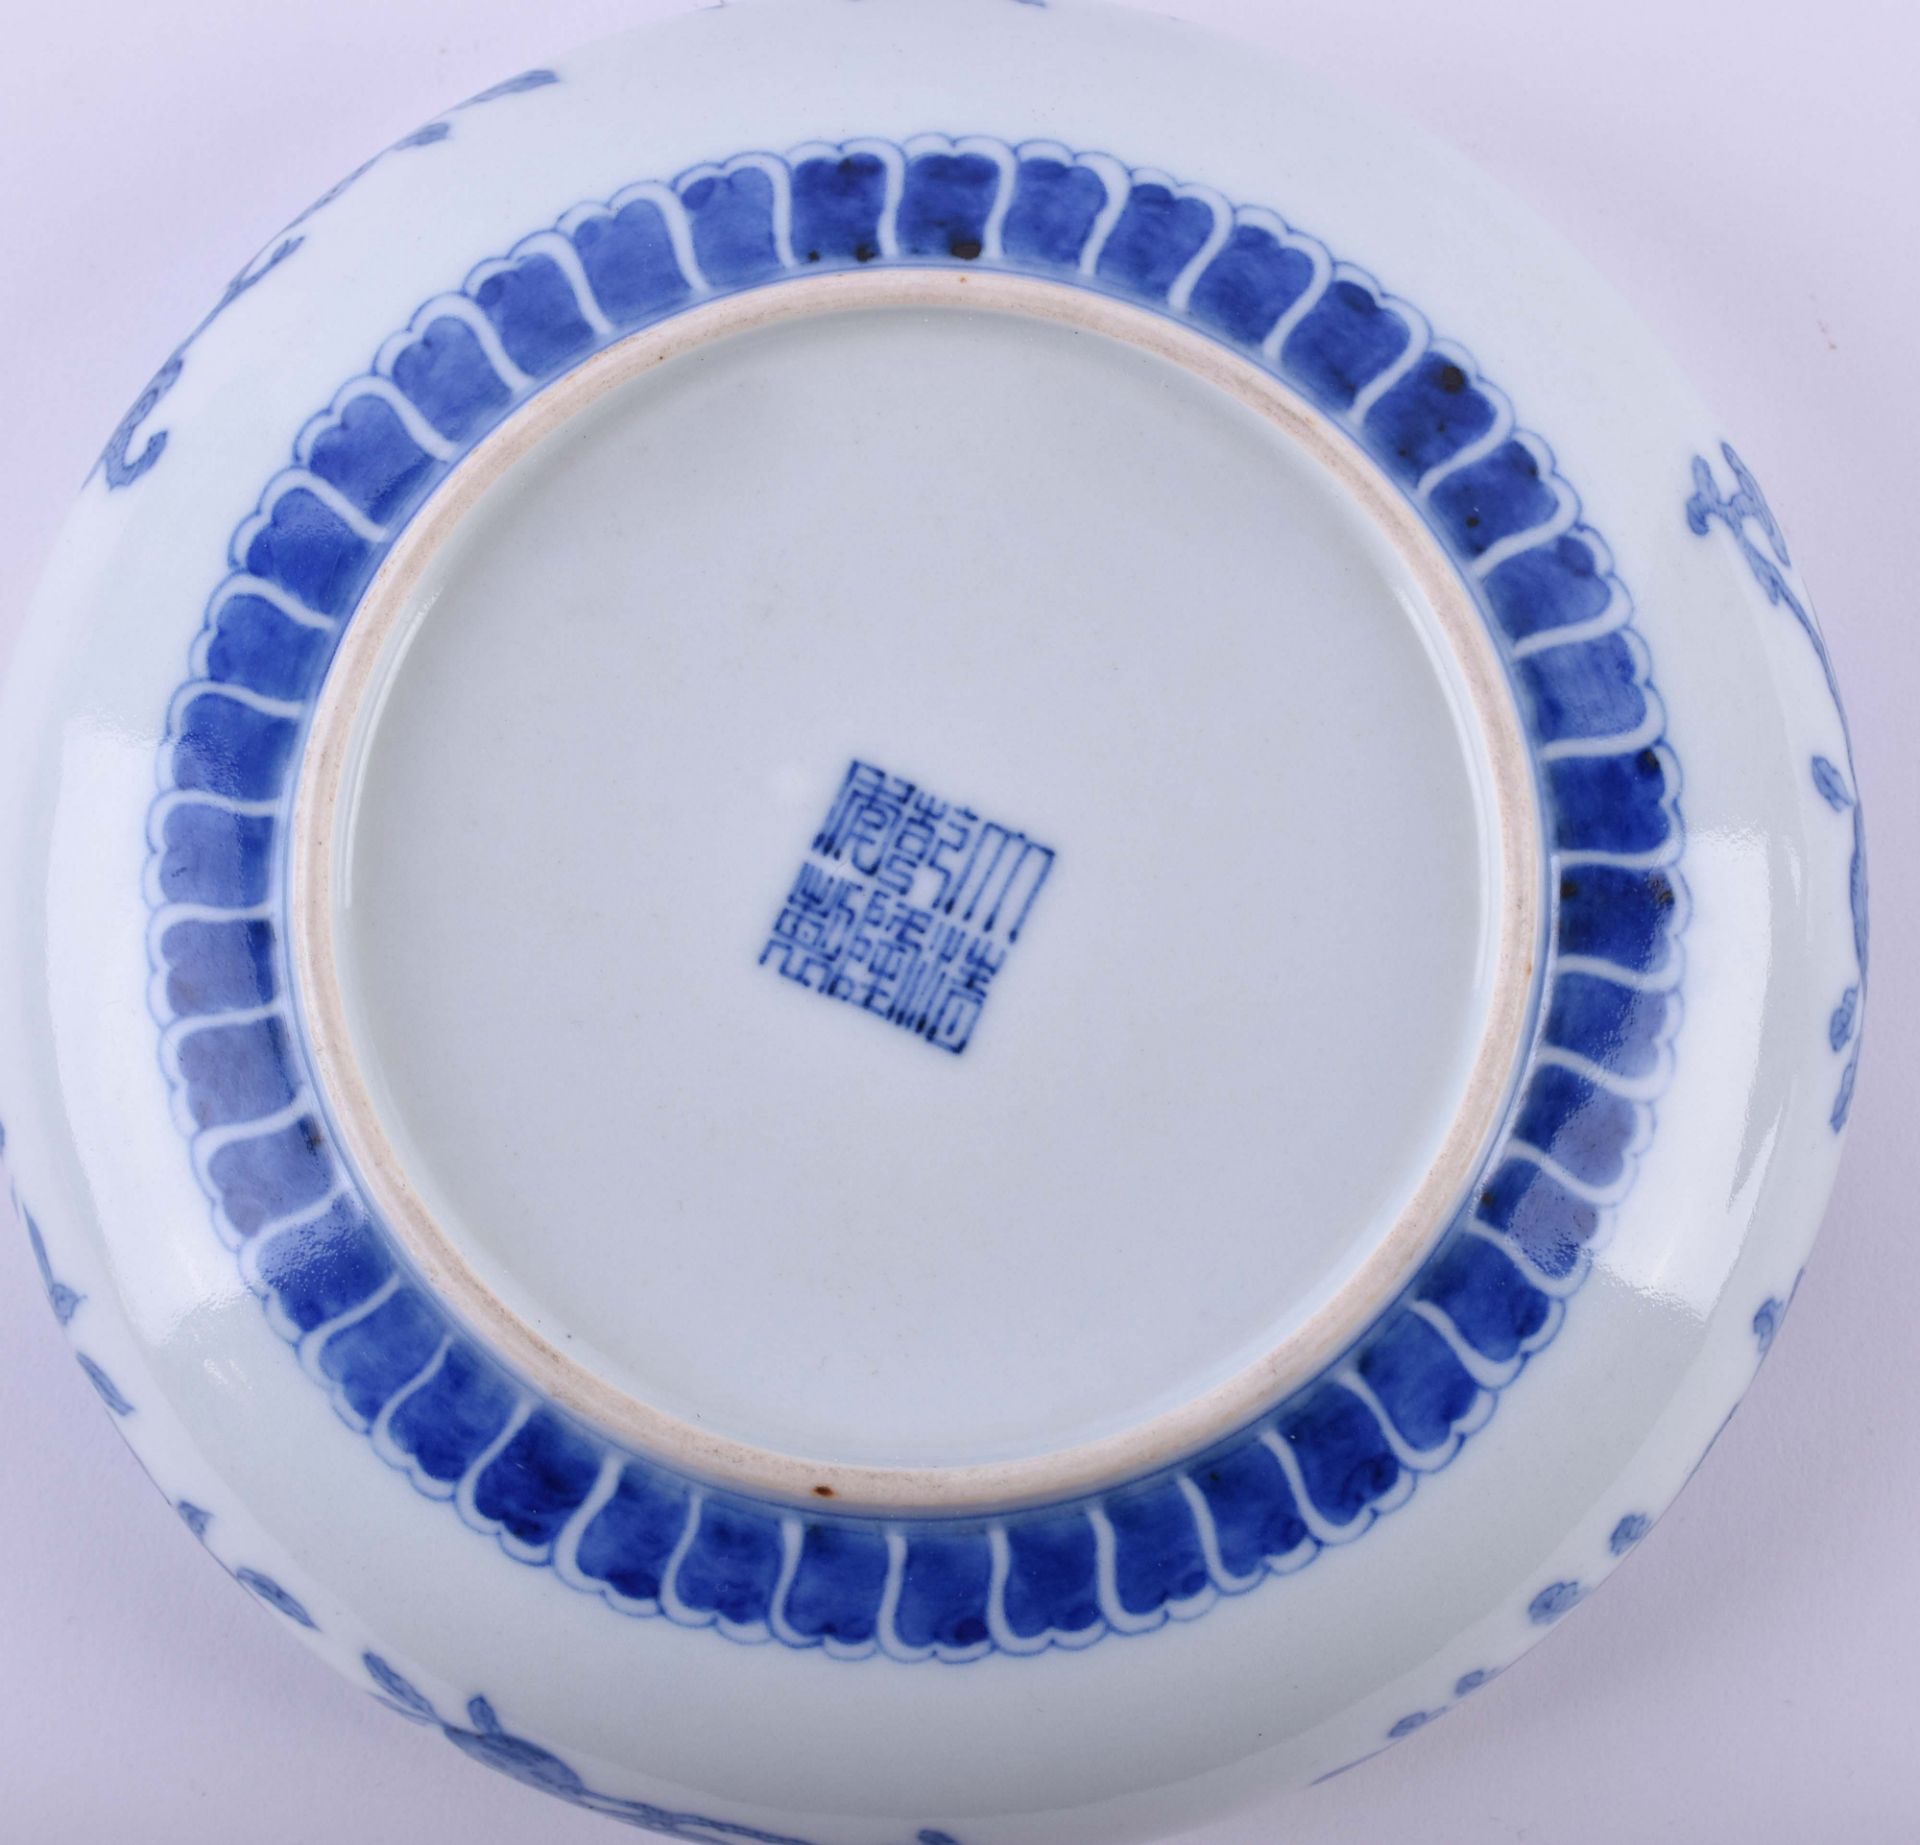  Bowl China Qing dynasty - Image 9 of 10